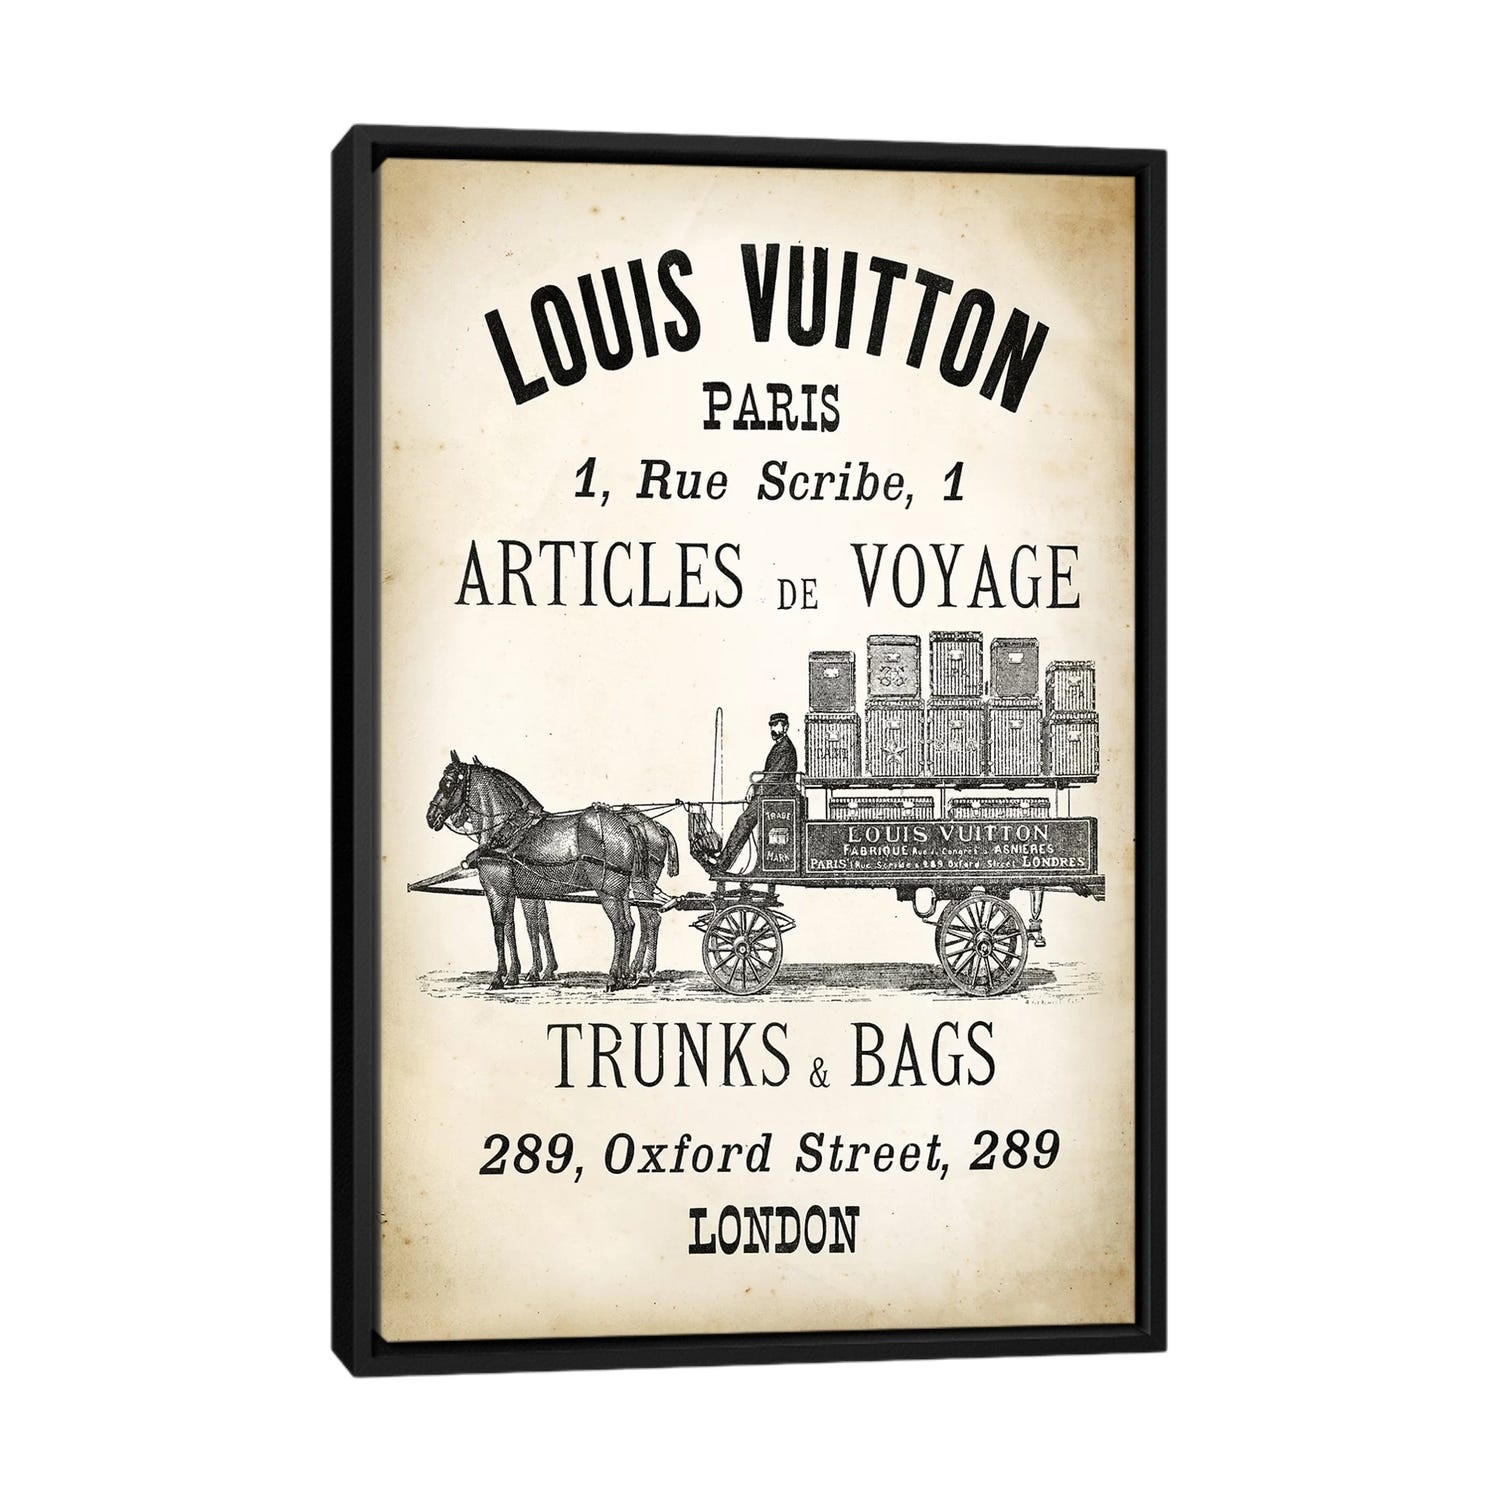 Louis Vuitton LV Paris Bathroom Set Luxury Shower Curtain Bath Rug